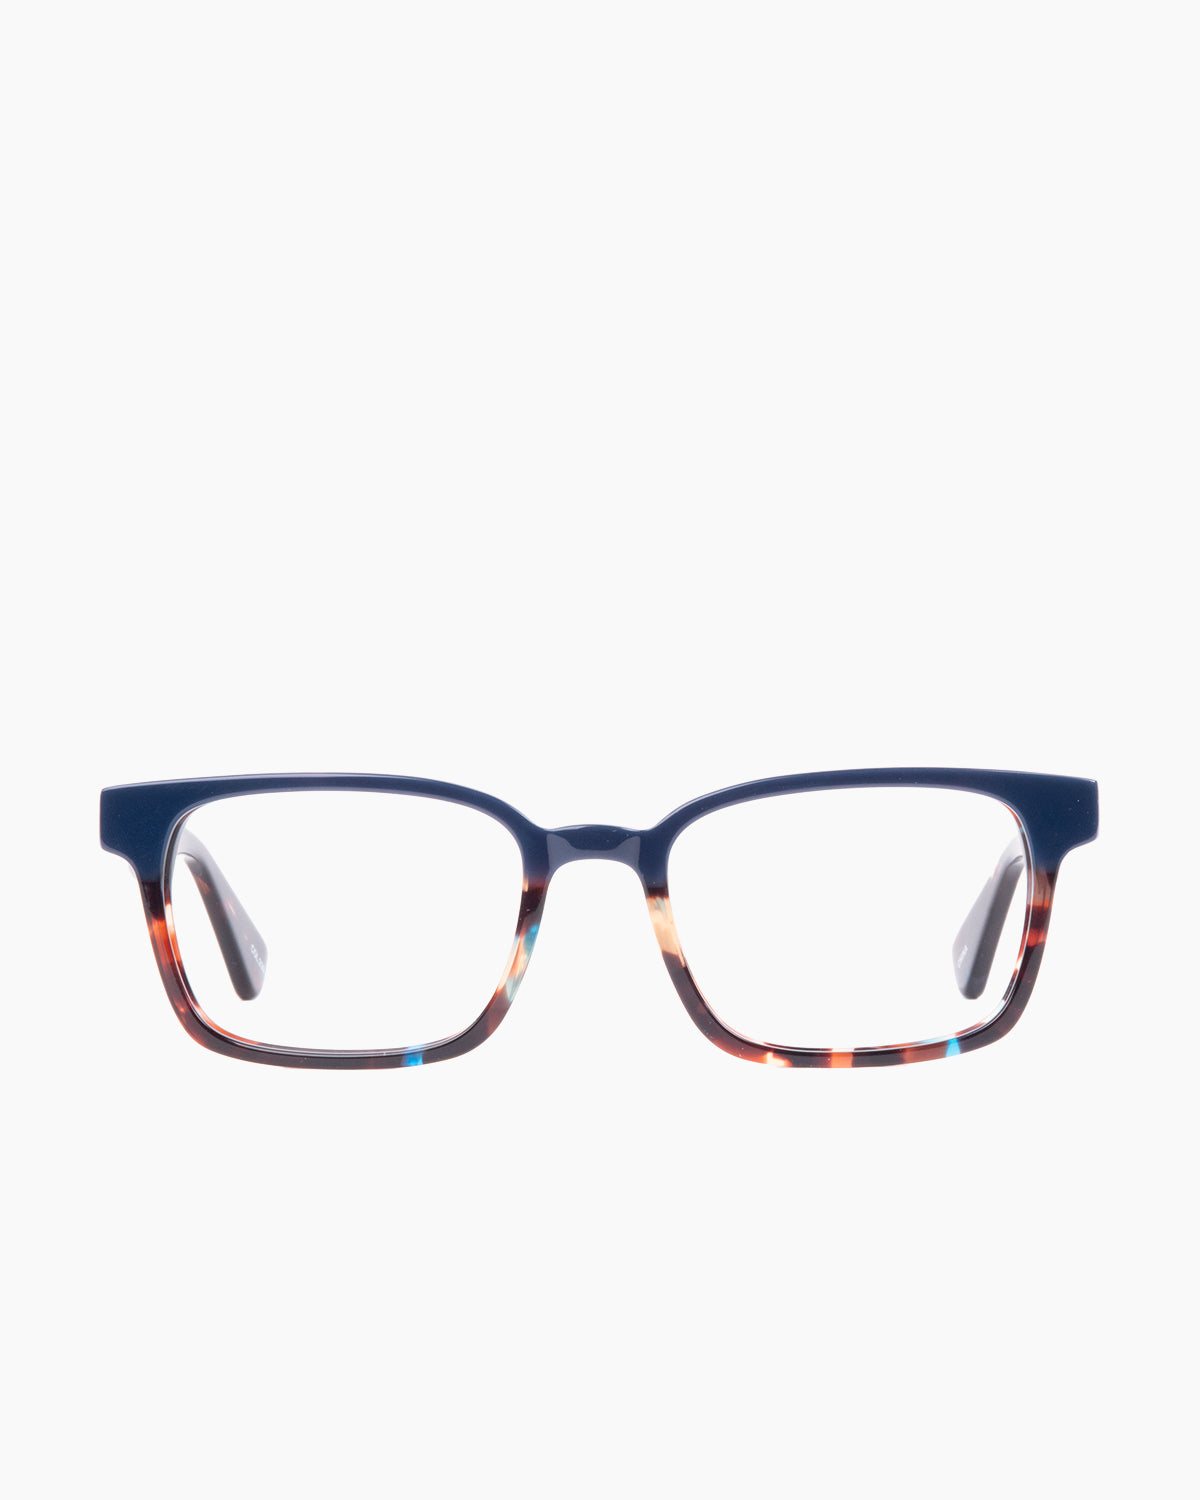 Evolve - Russell - 239 | glasses bar